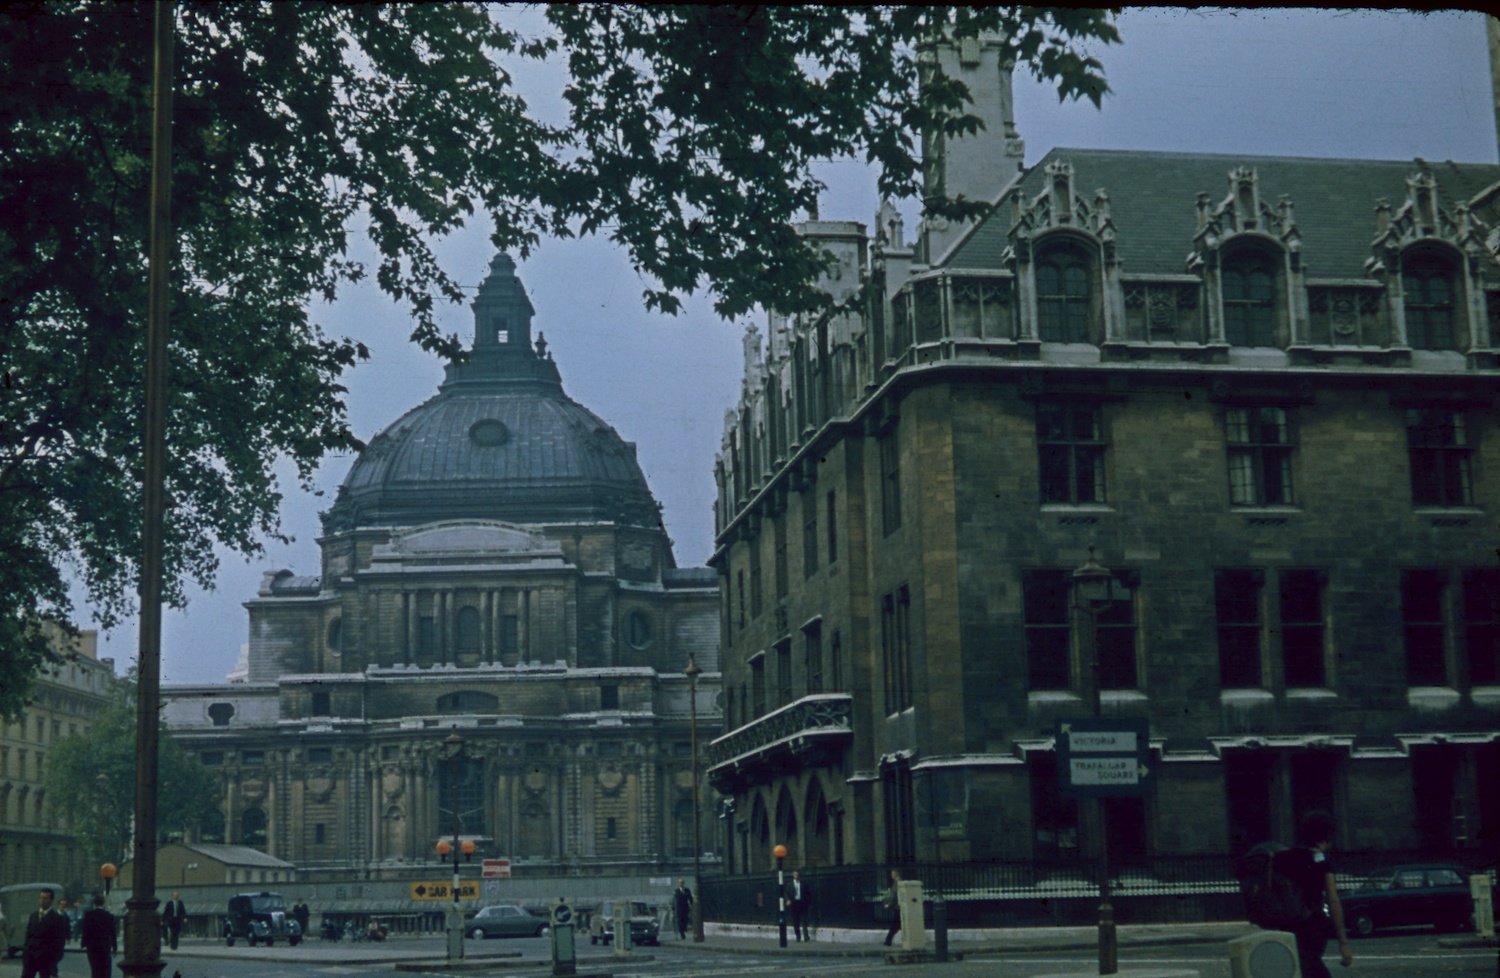 London 1970